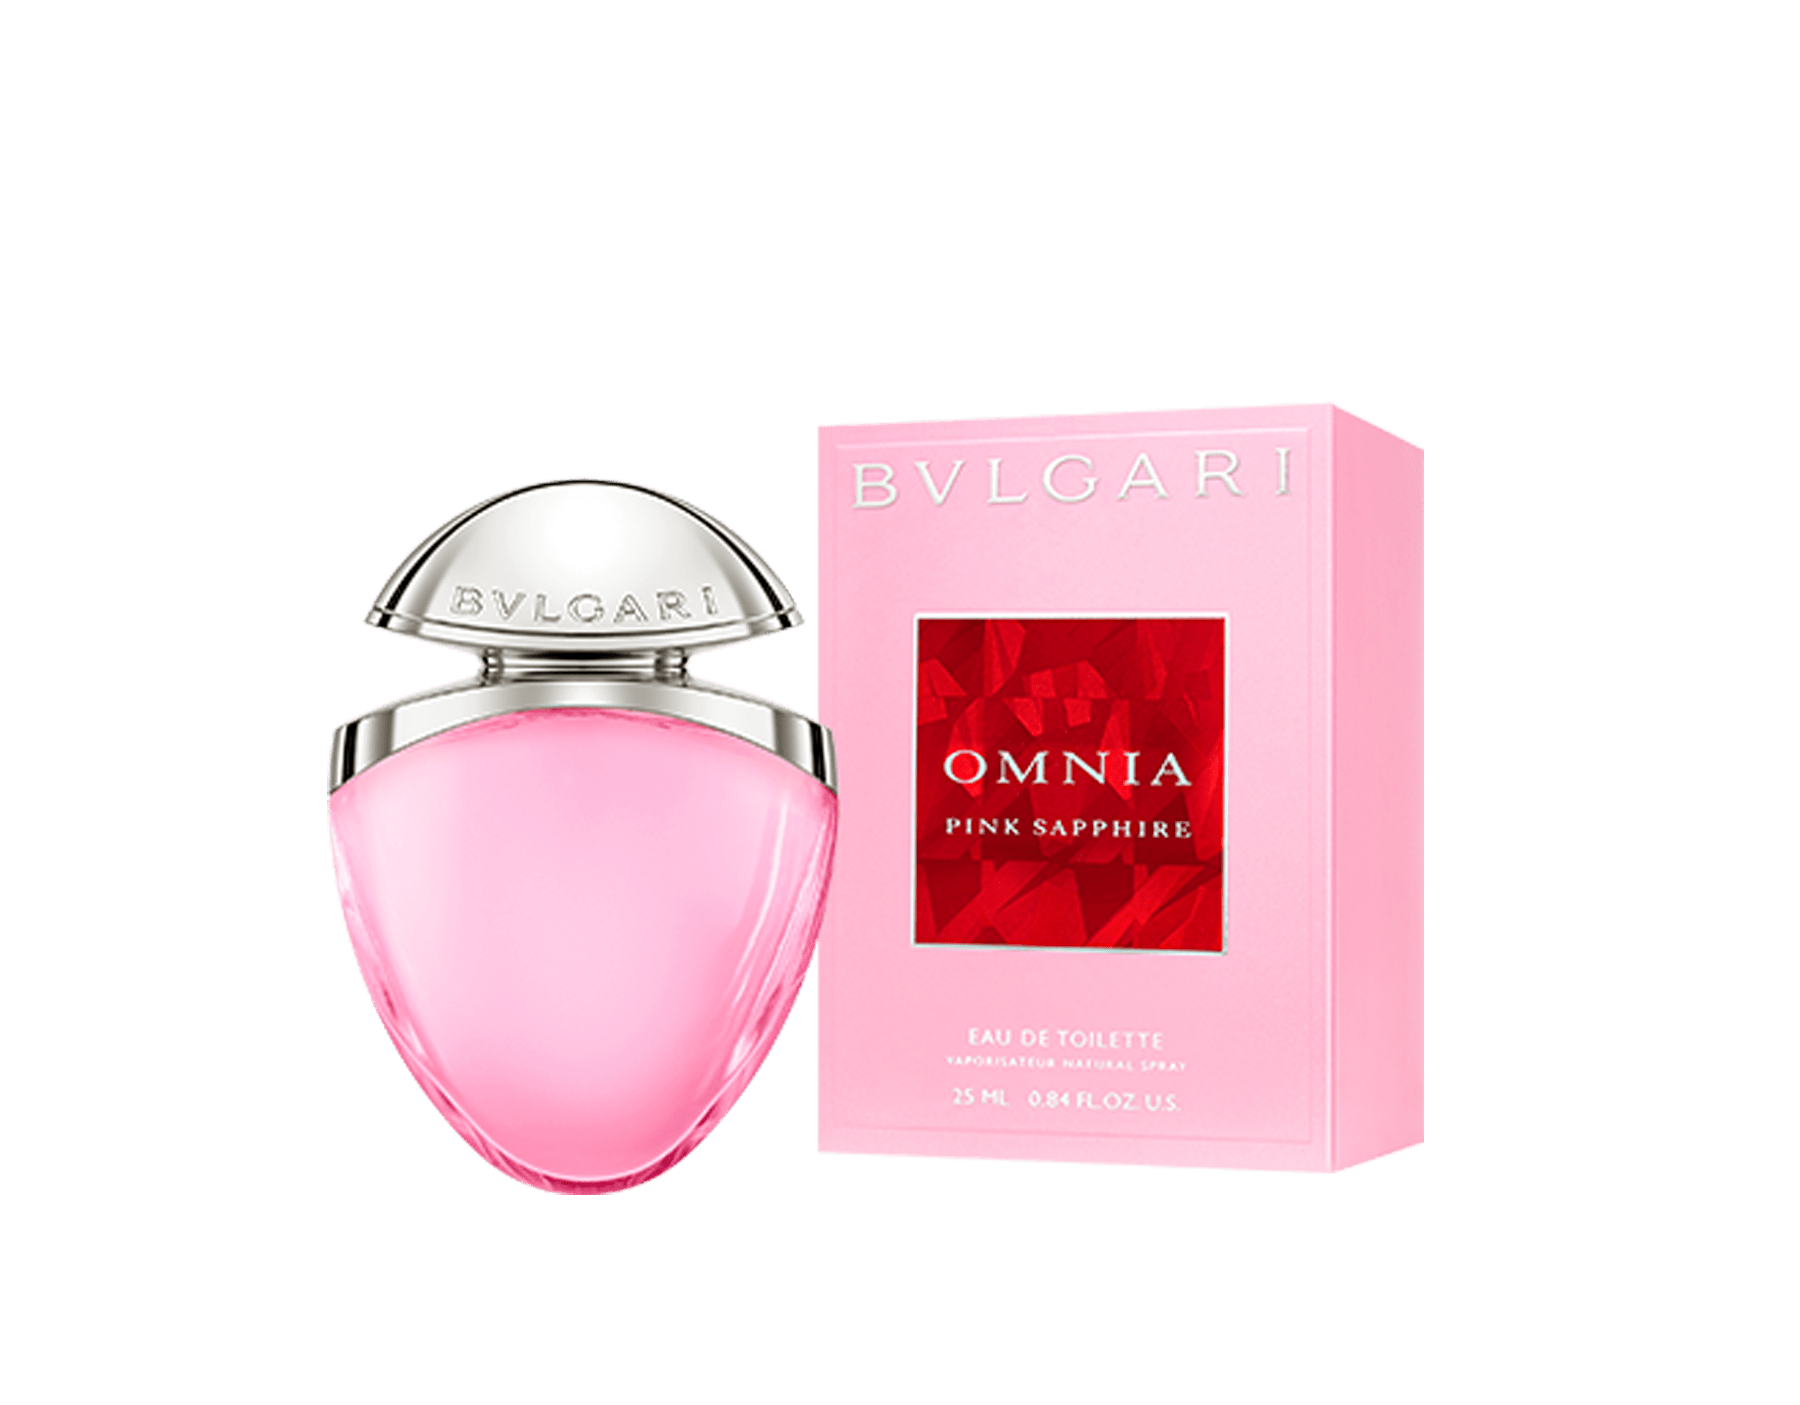 bvlgari parfum omnia pink sapphire